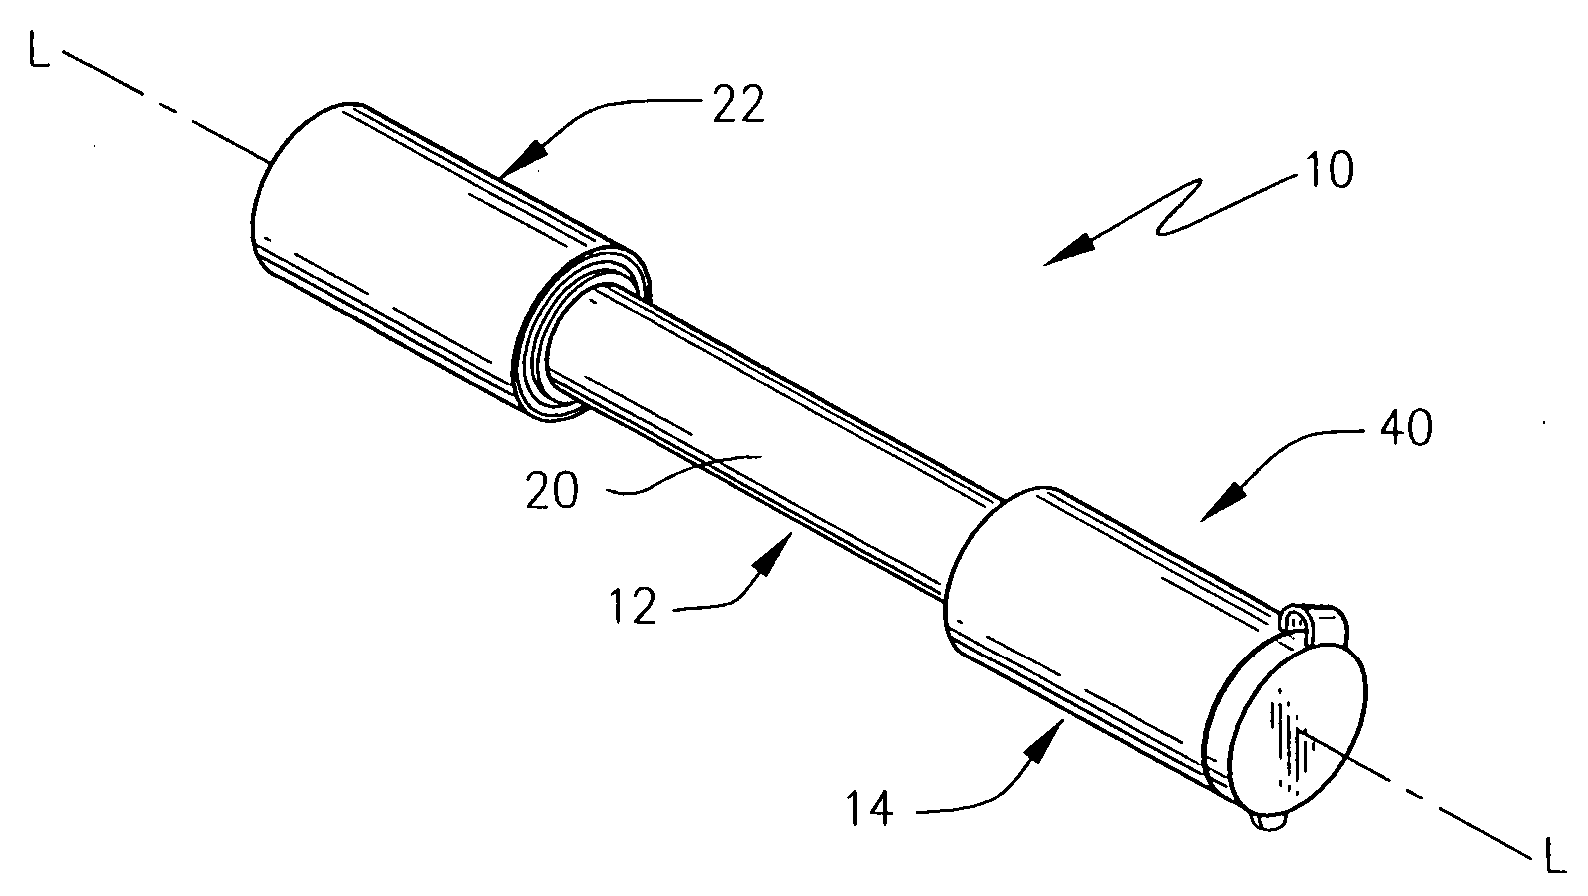 Locking device having flange seal